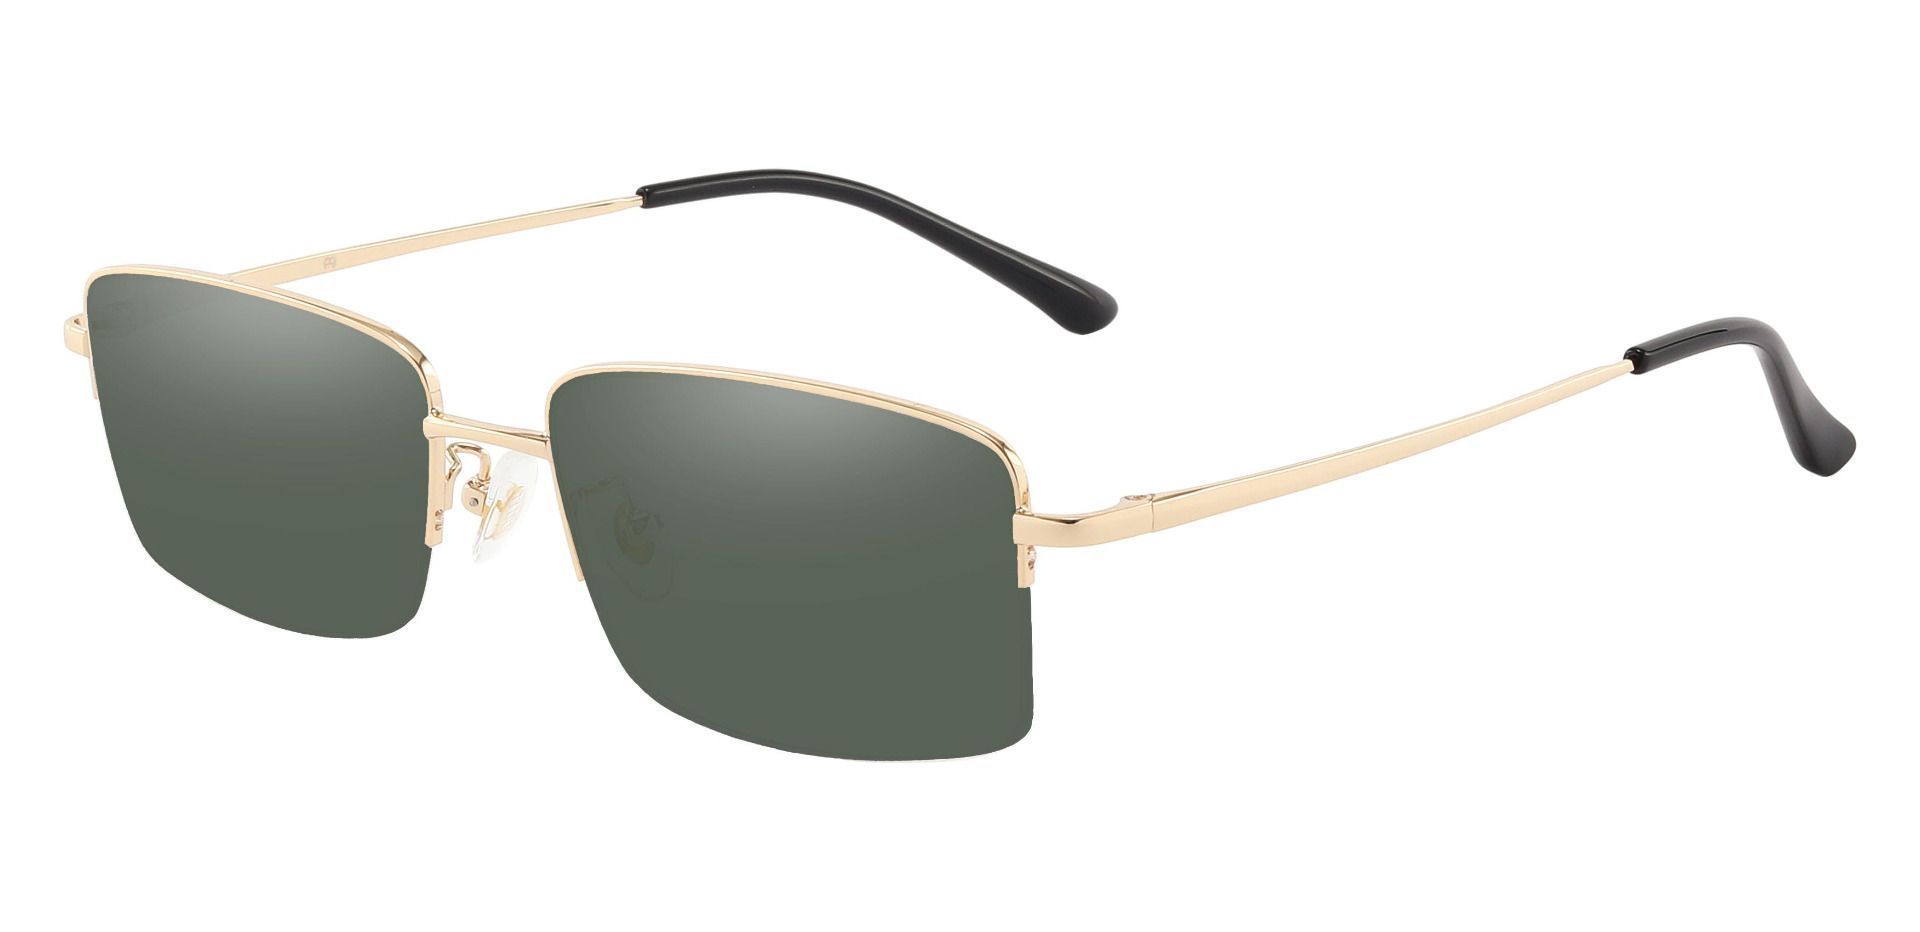 Bellmont Rectangle Progressive Sunglasses - Gold Frame With Green Lenses